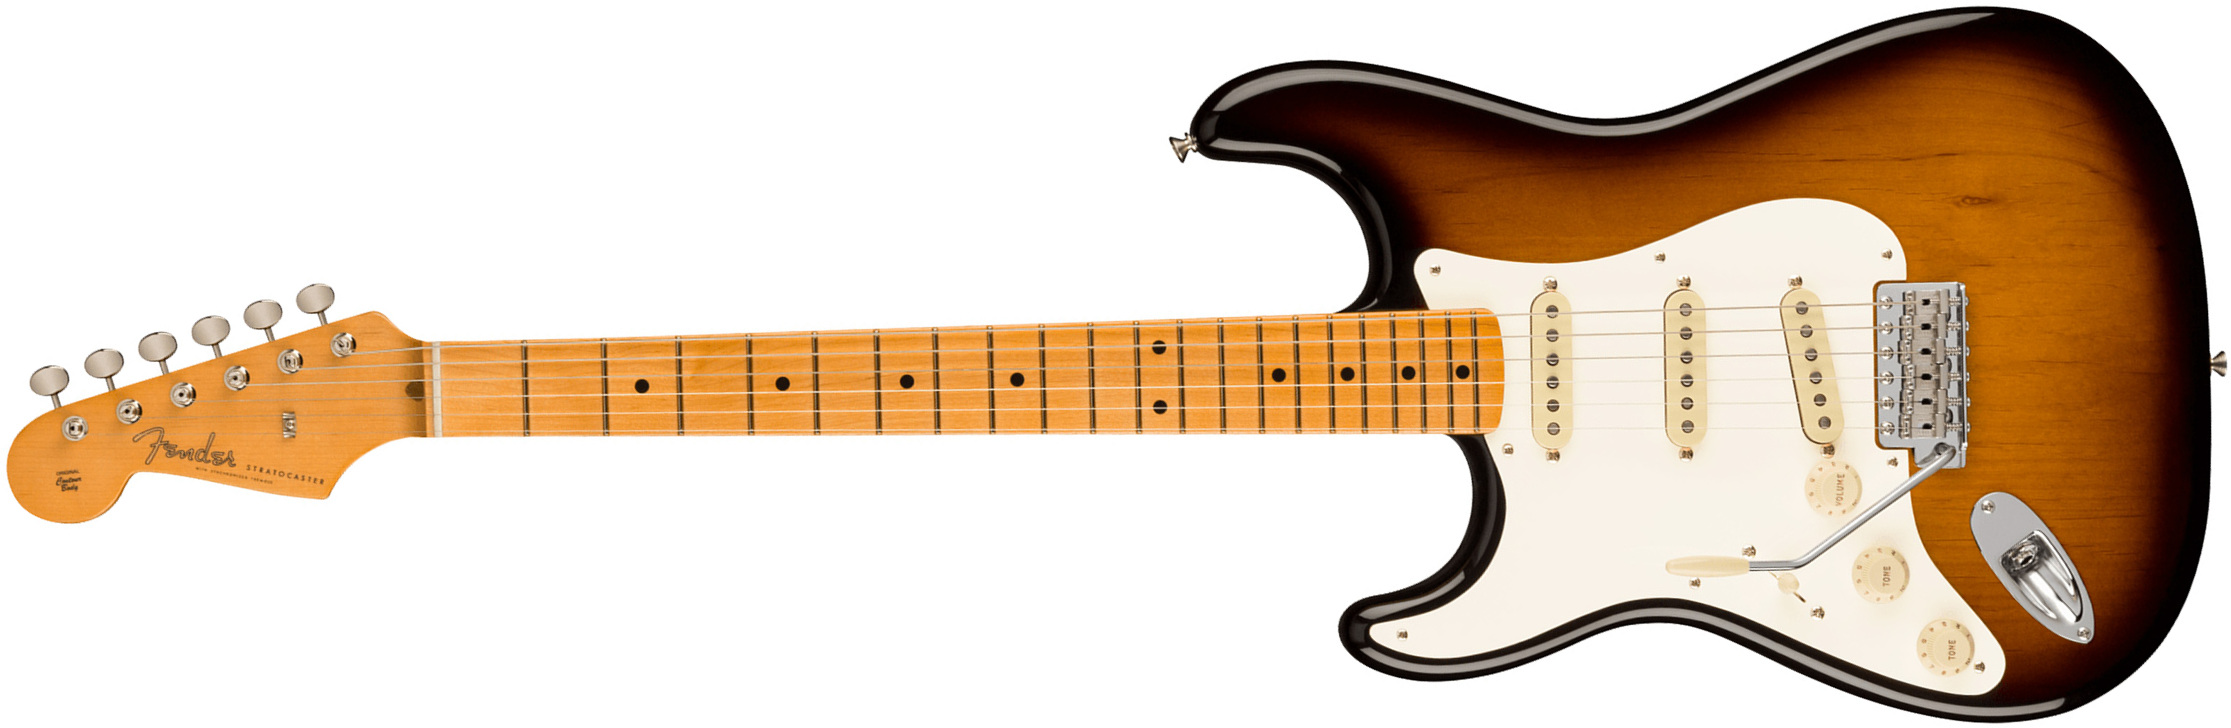 Fender Strat 1957 American Vintage Ii Lh Gaucher Usa 3s Trem Mn - 2-color Sunburst - Linkshandige elektrische gitaar - Main picture